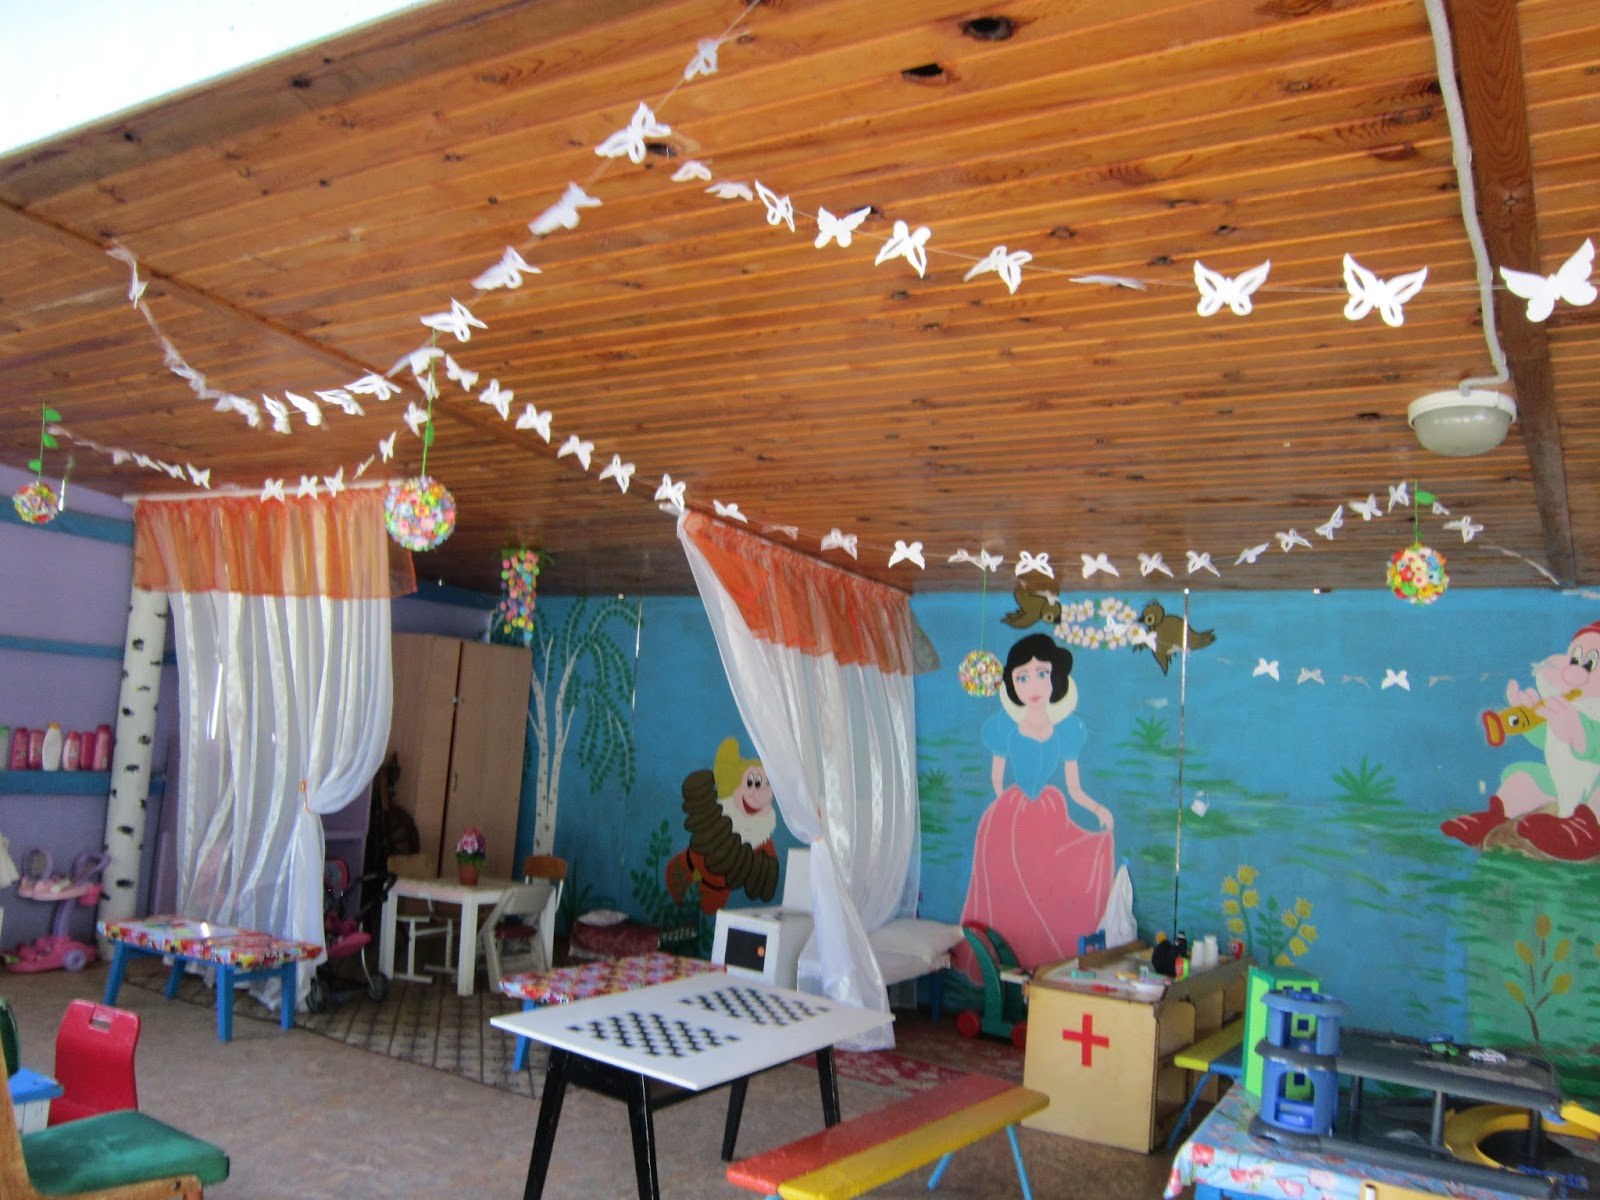 Оформление Участка в Детском Саду Летом (50 Фото Поделок)